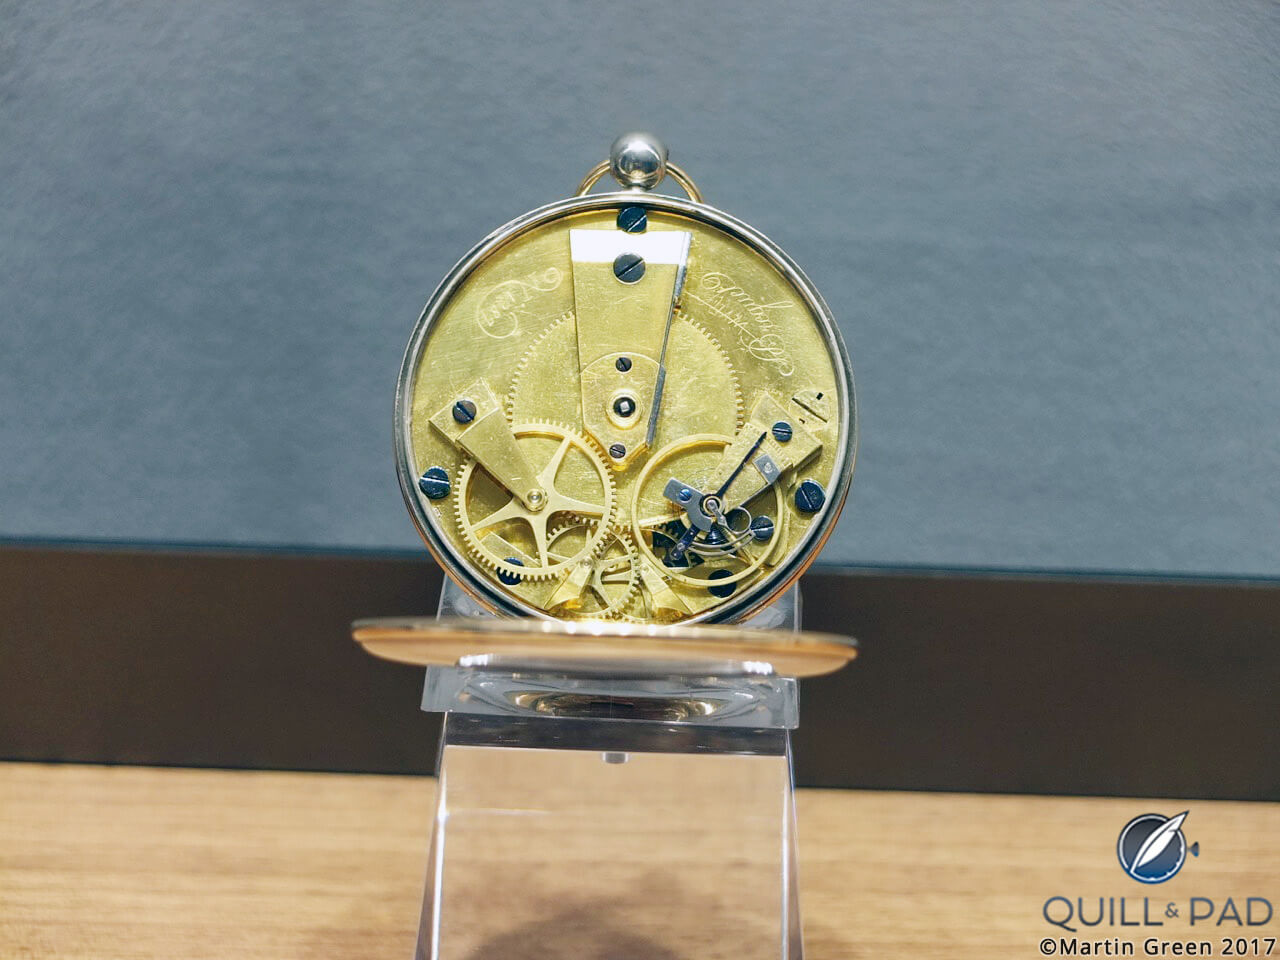 Historic Breguet pocket watch in the Breguet boutique on Place Vendôme, Paris